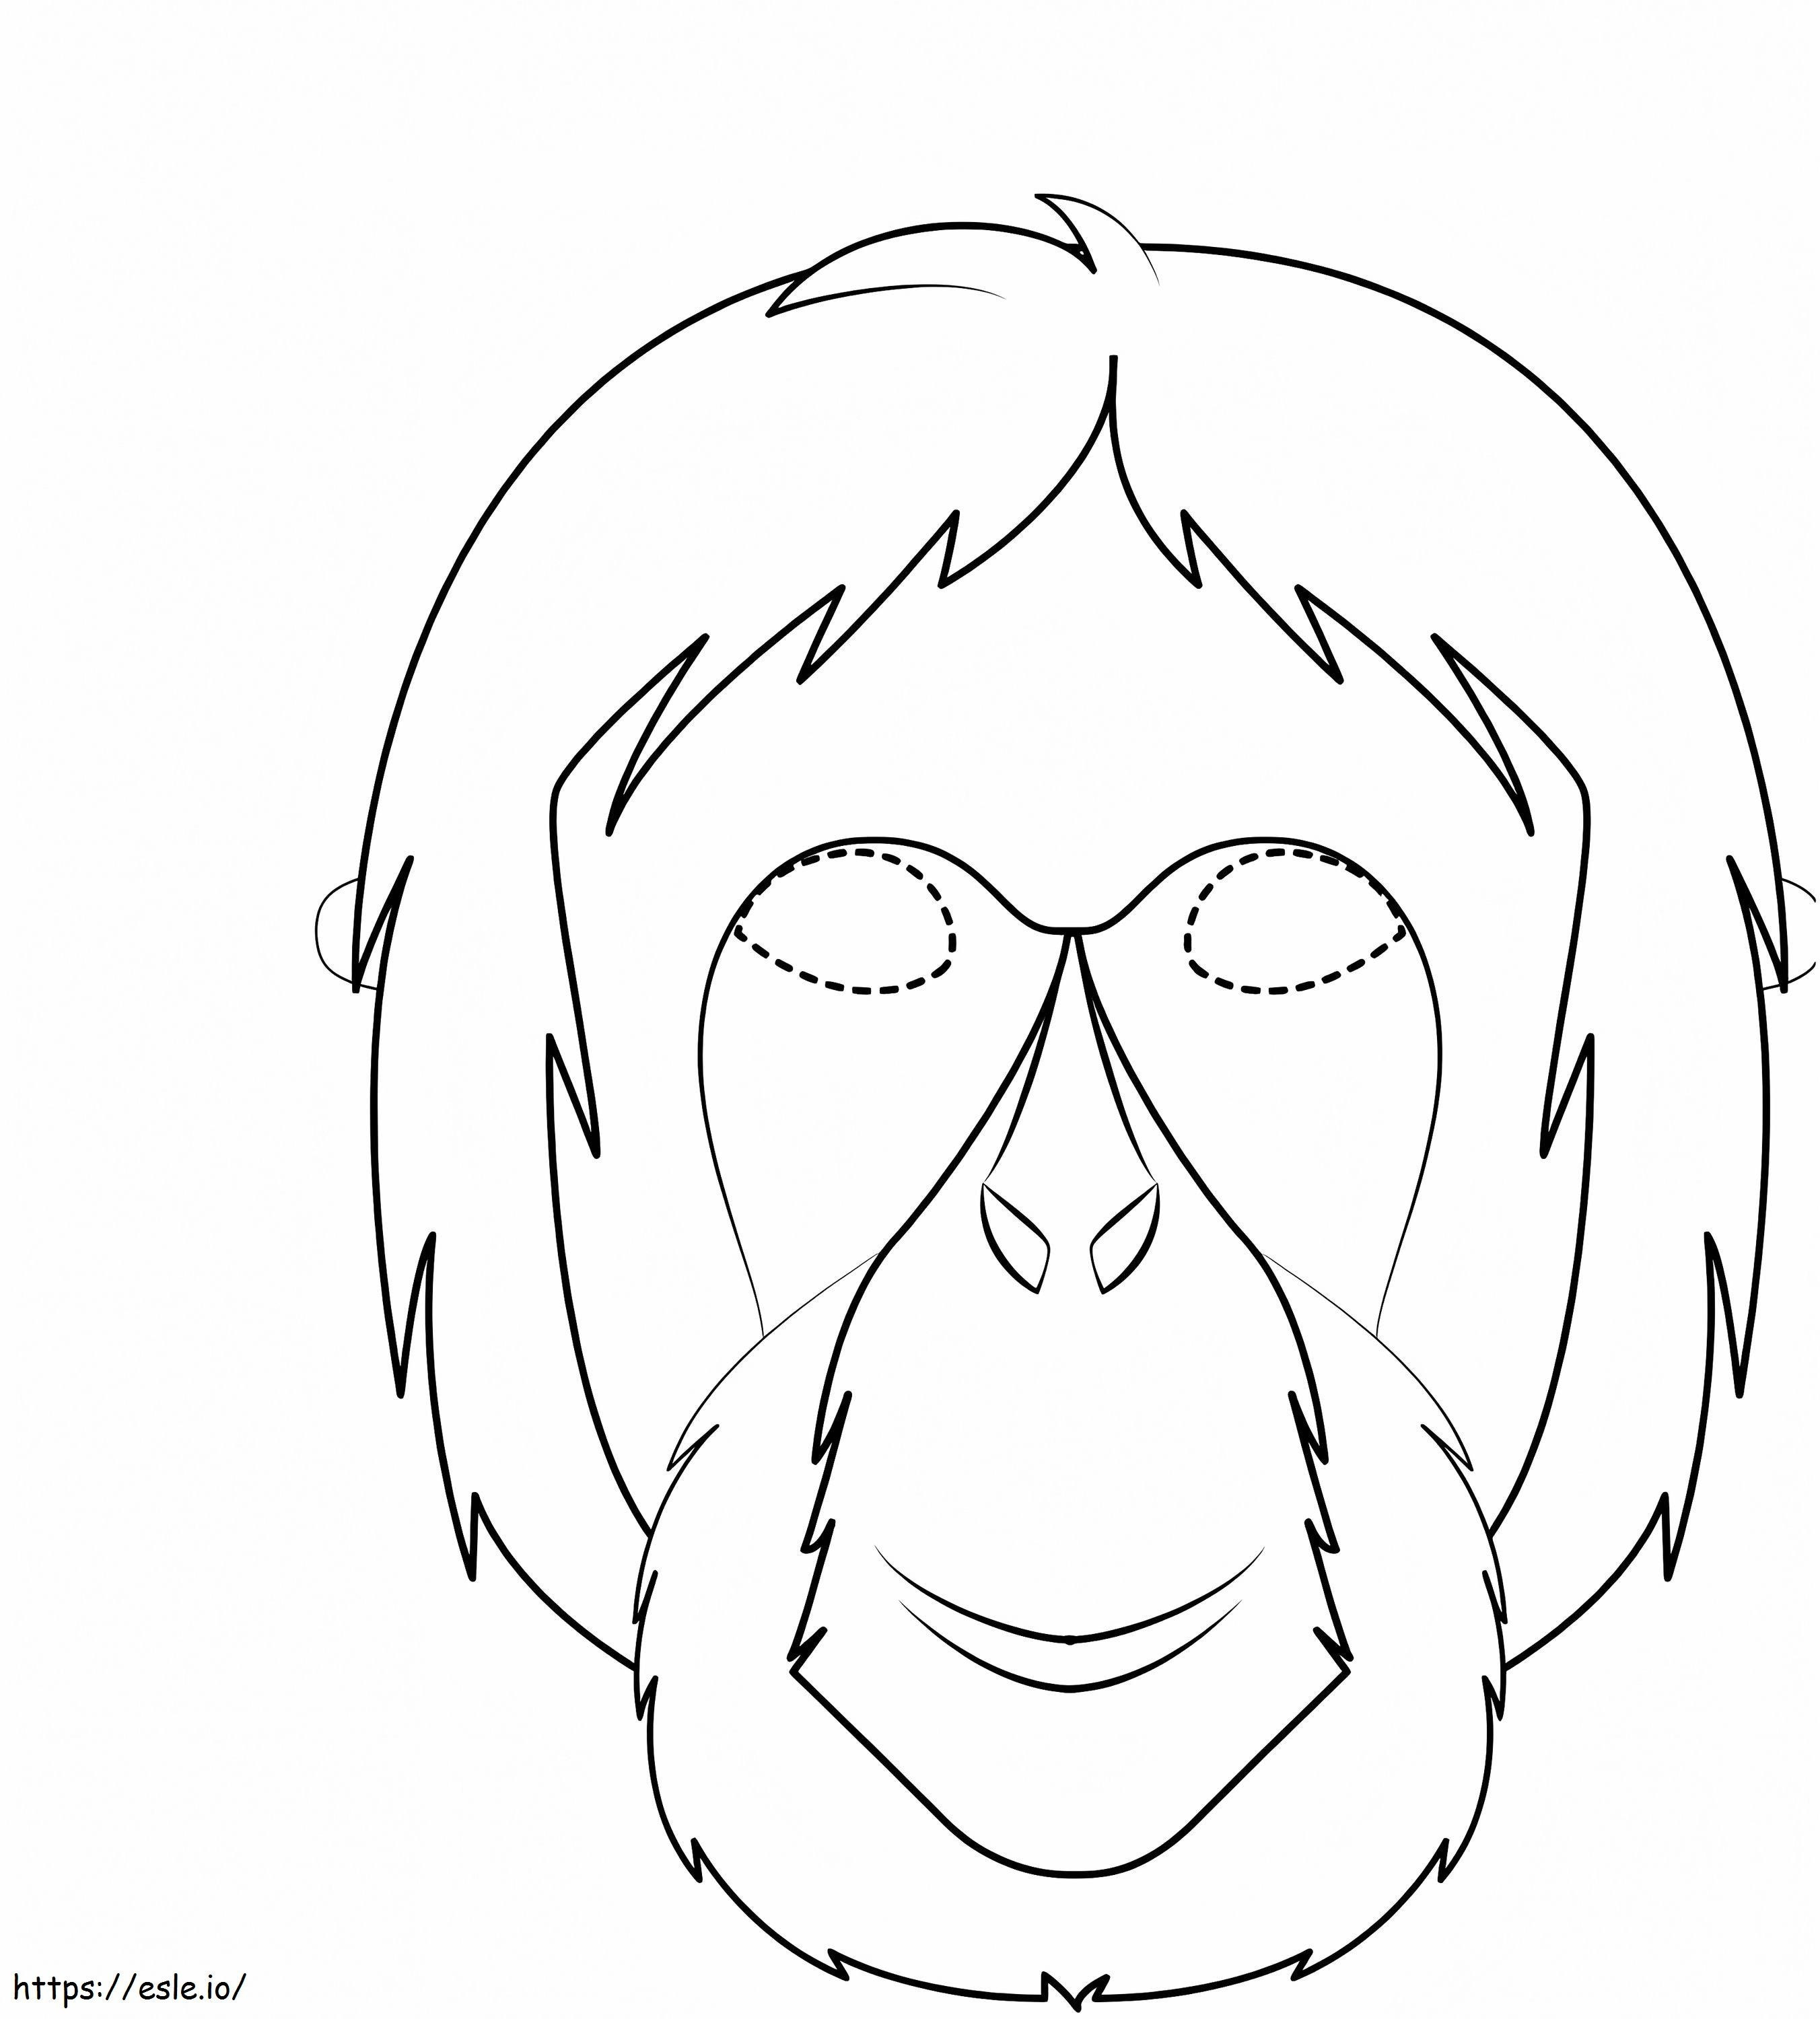  Mascara Orangután A4 para colorear